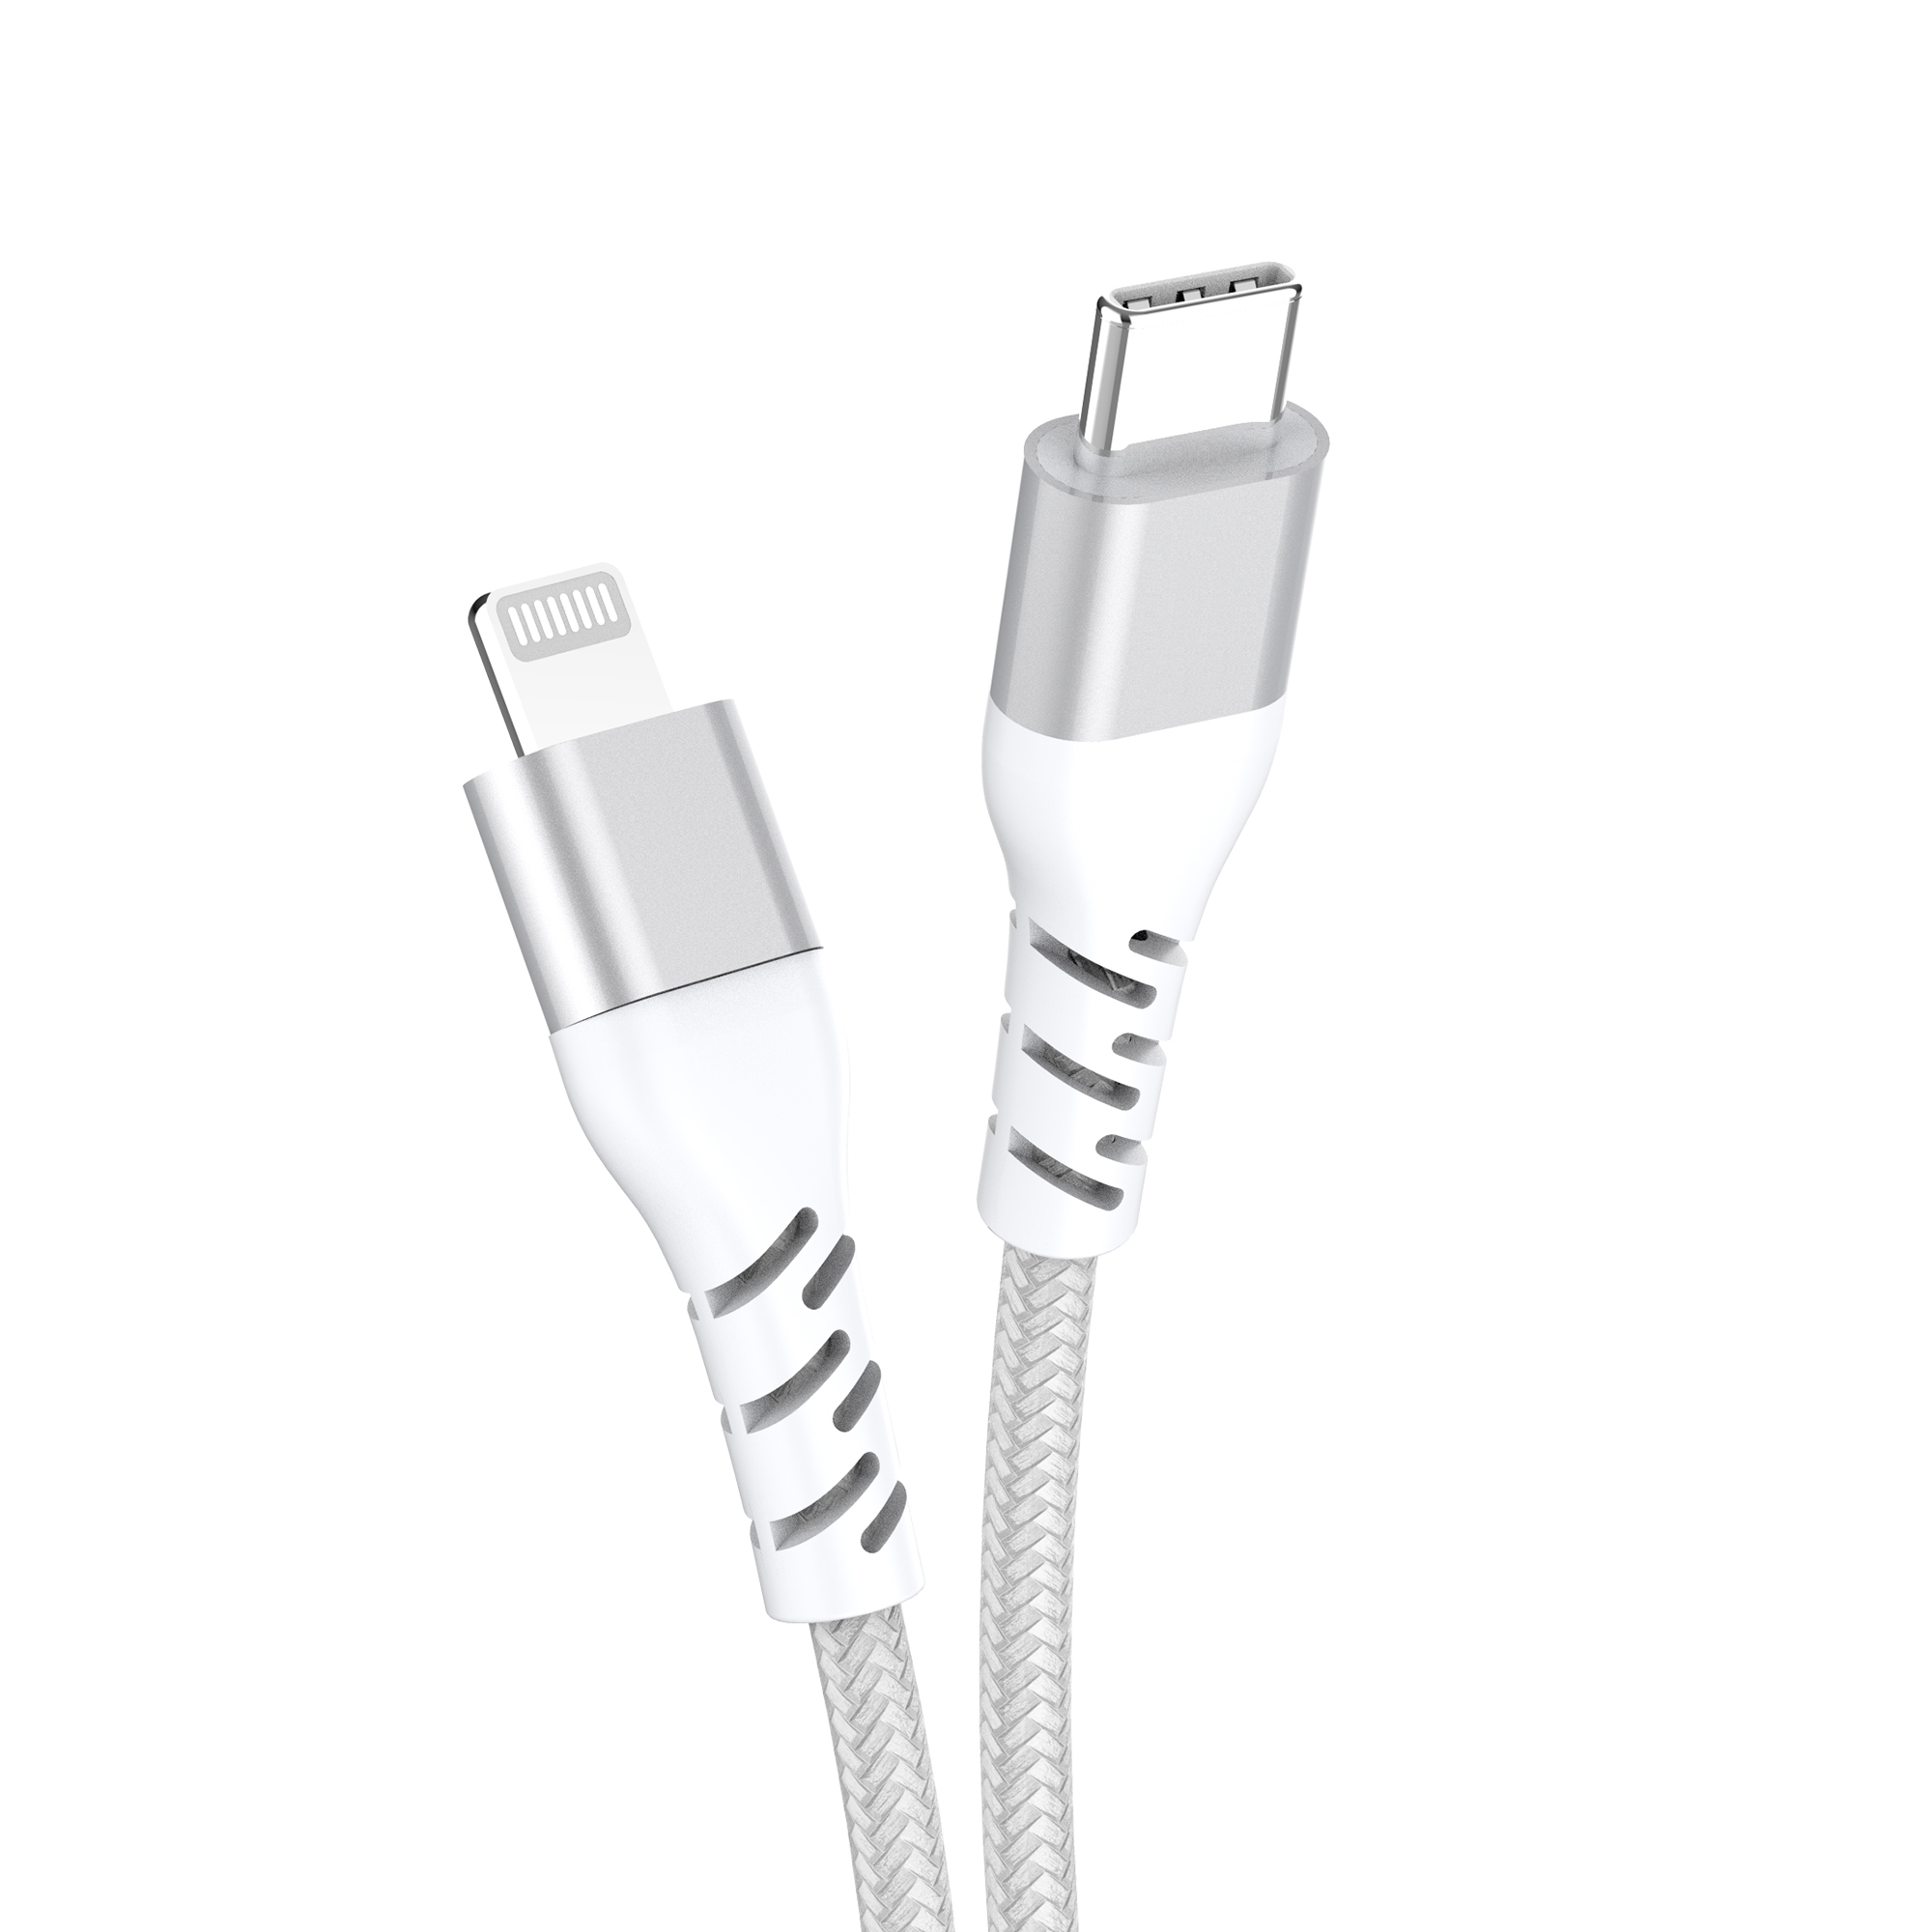 Mfi认证的USB C iphone线缆